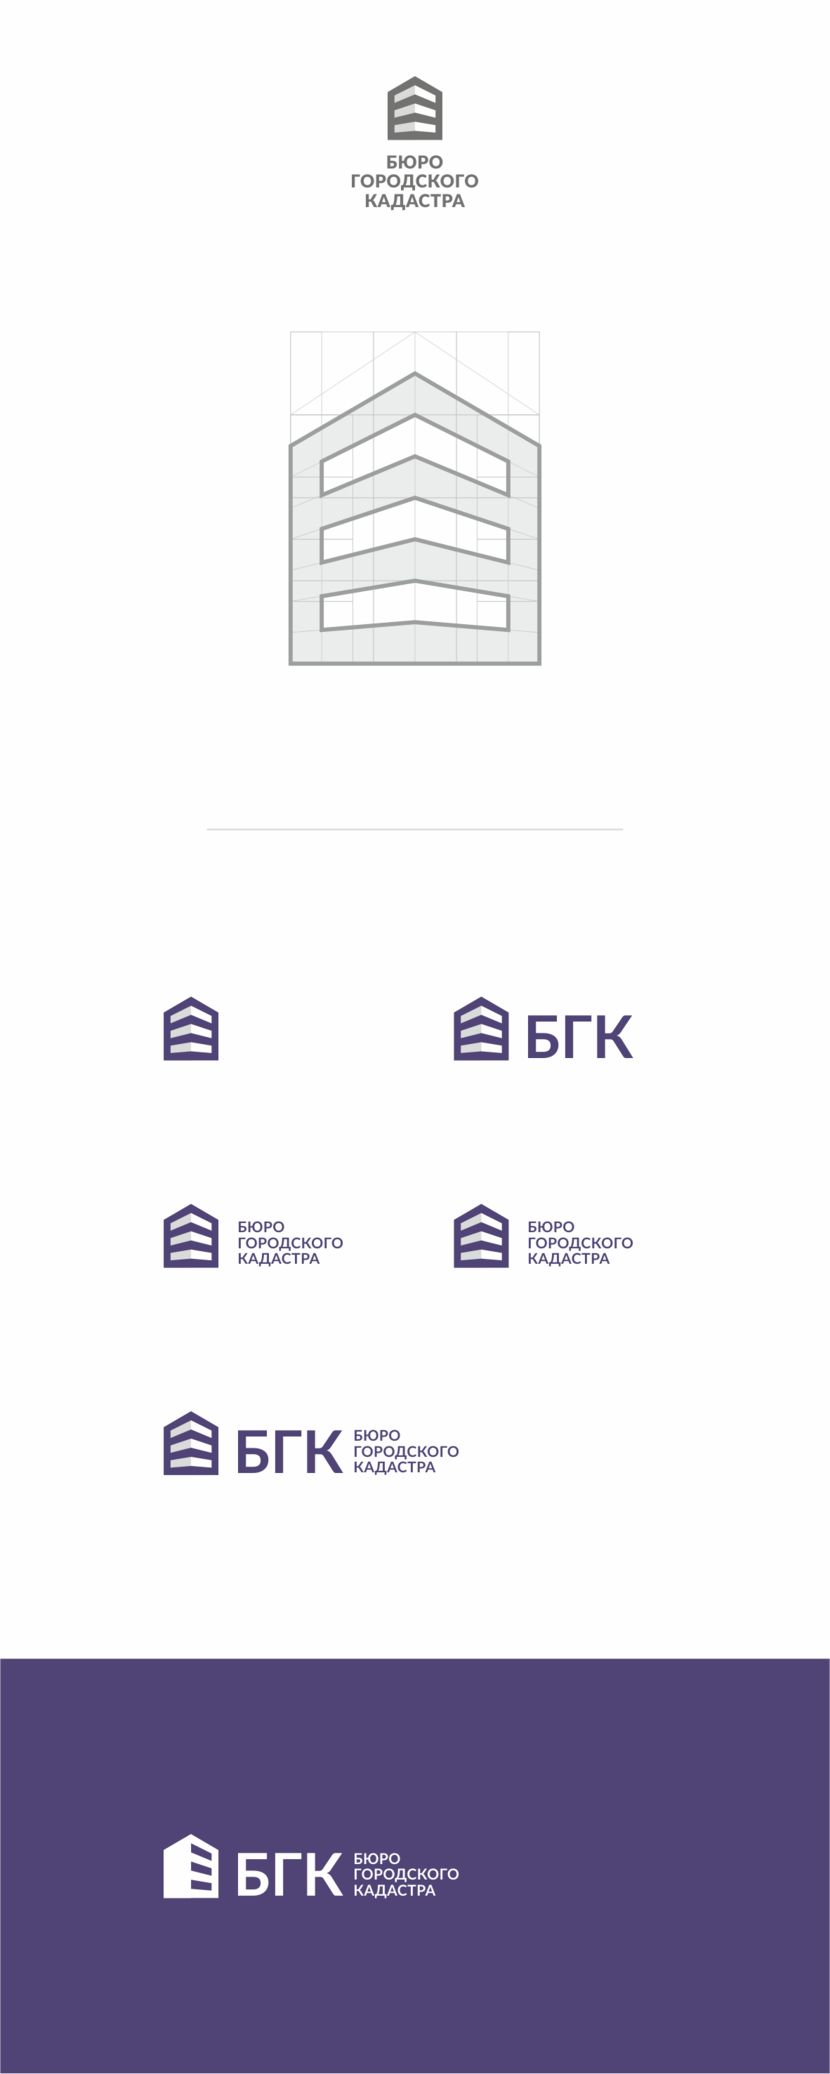 + - Разработка логотипа компании Бюро городского кадастра